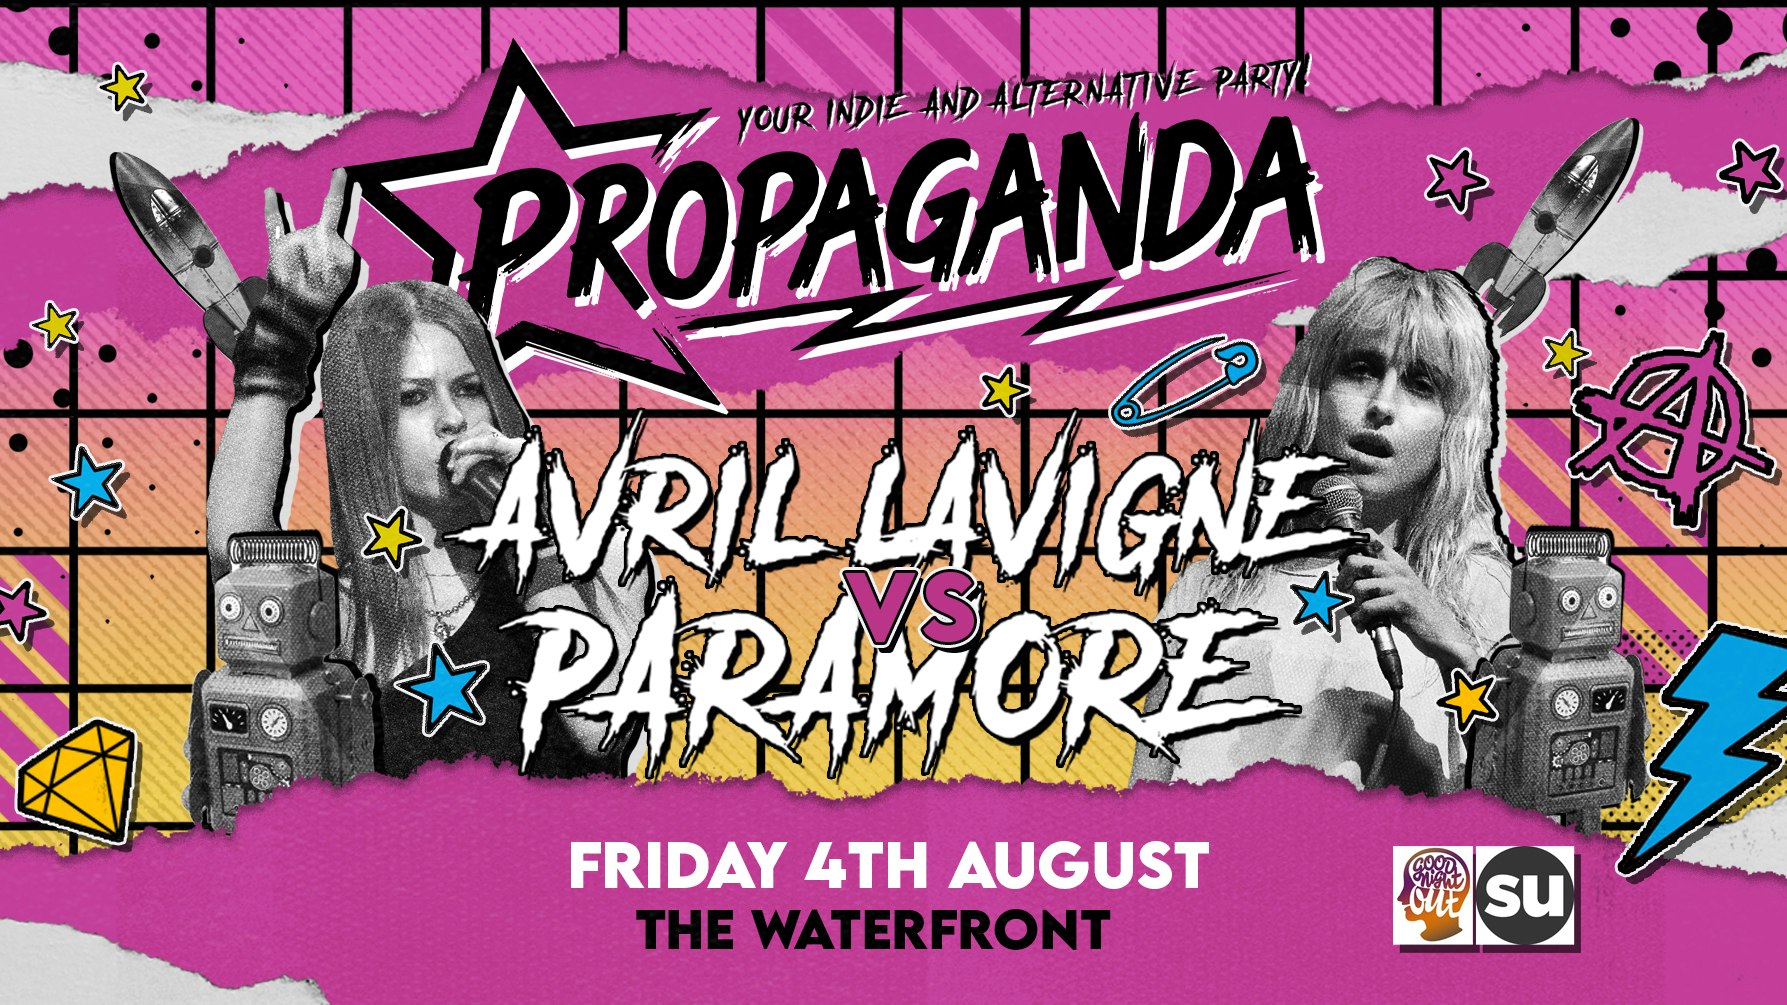 Propaganda Norwich – Avril Lavigne vs Paramore!